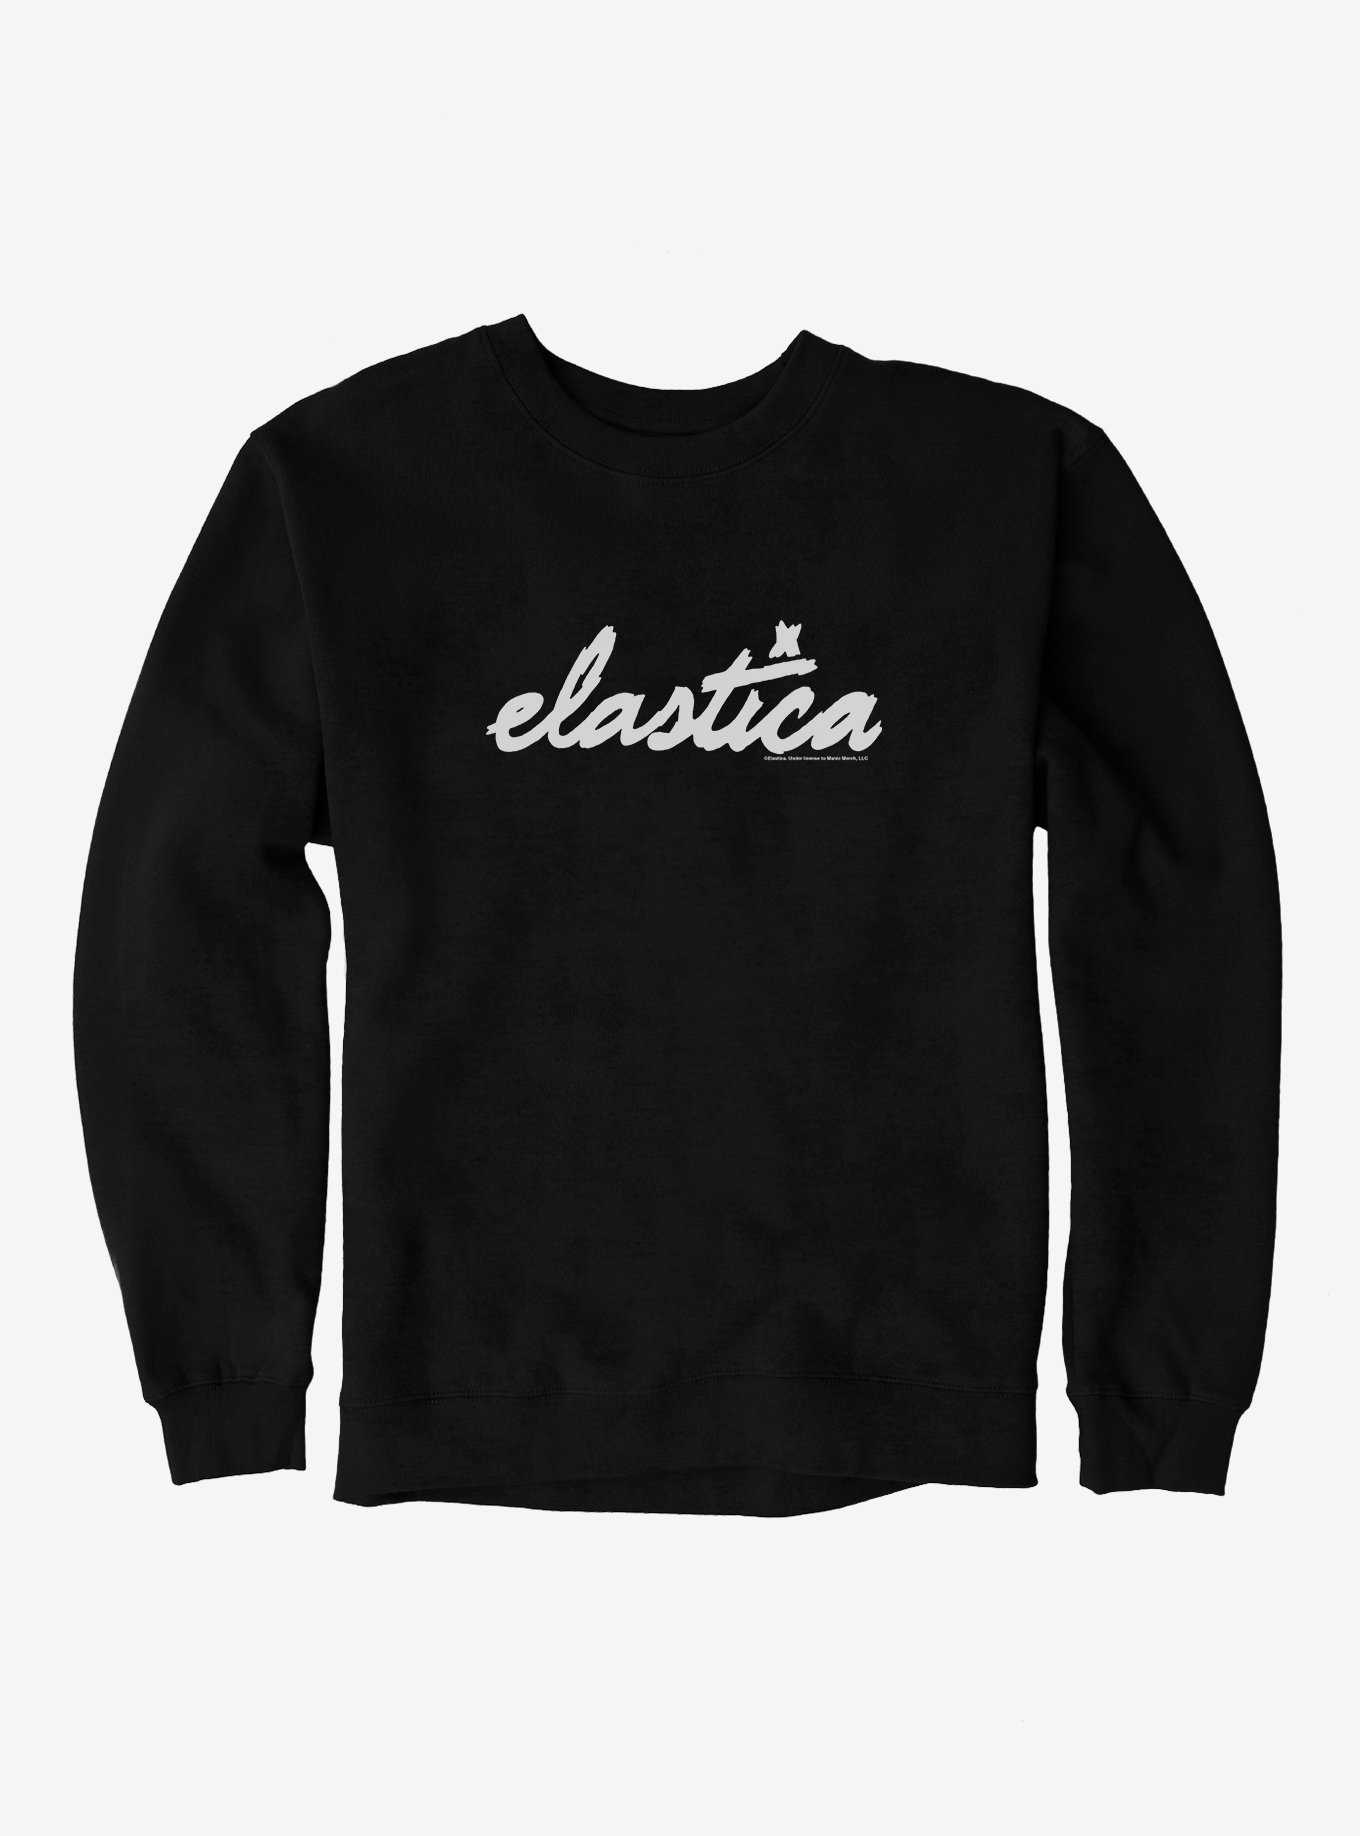 Elastica Logo Sweatshirt, , hi-res